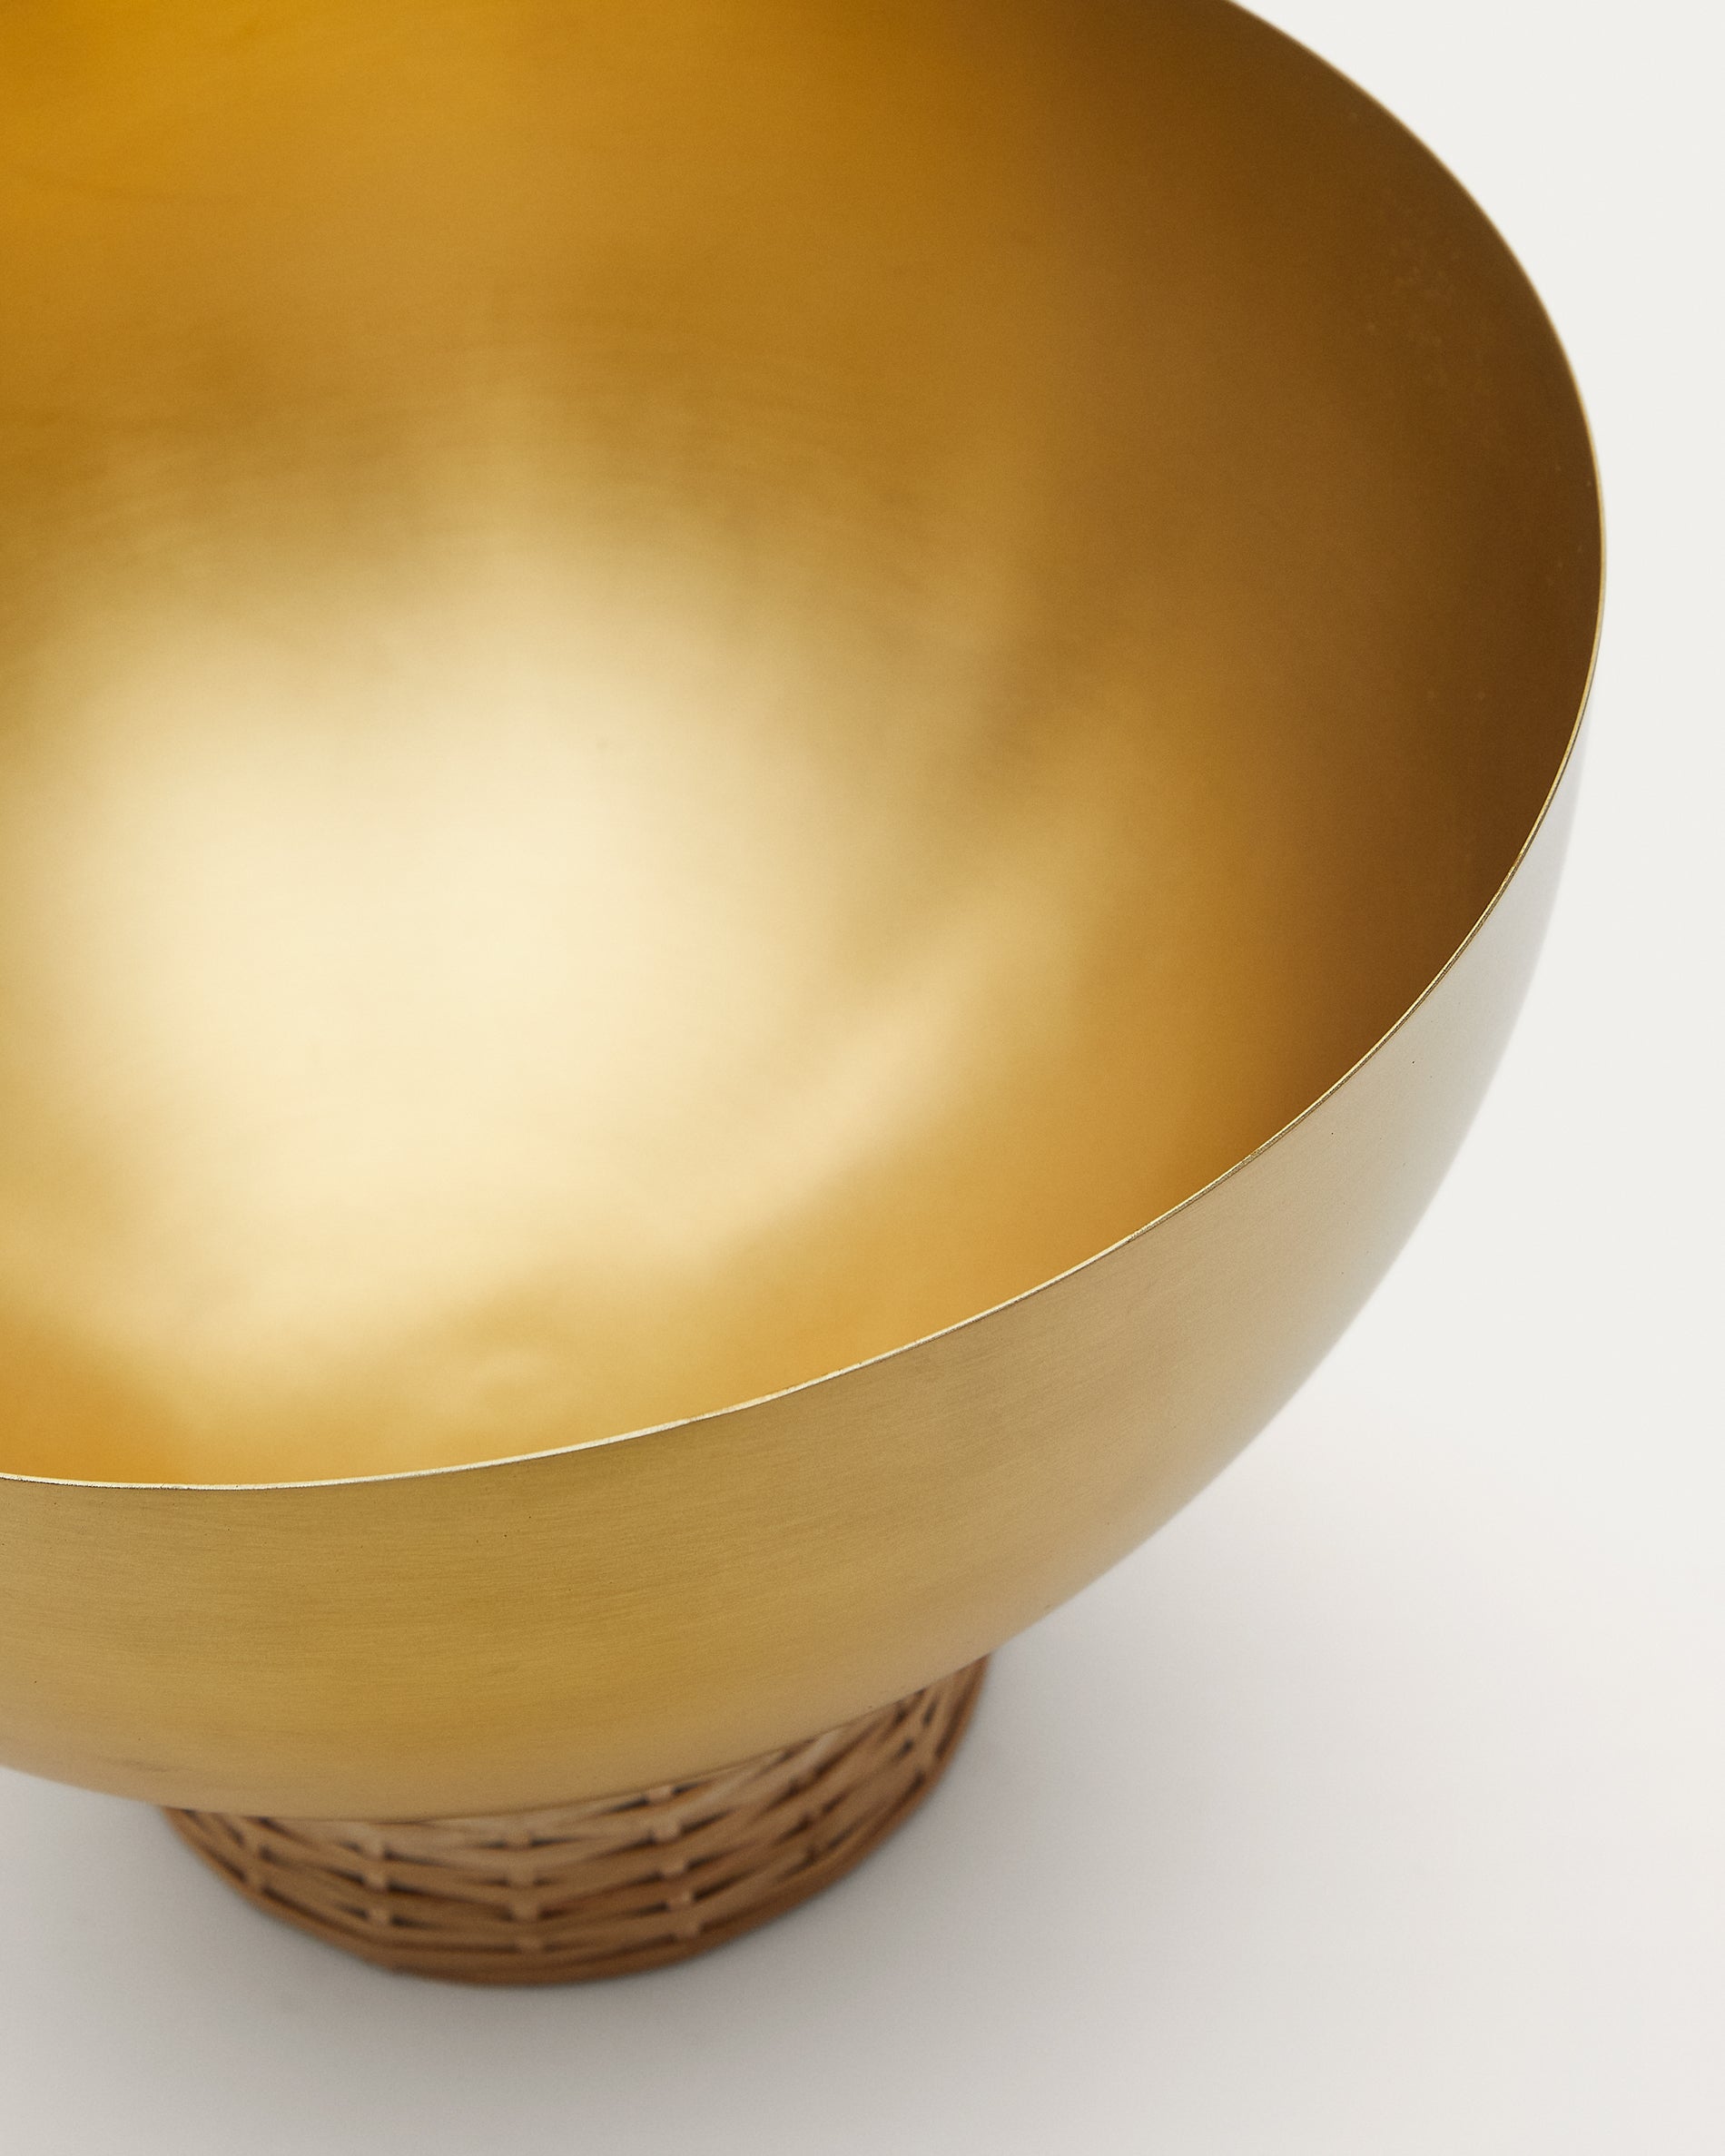 Suli nagyméretű tál arany bevonatú rozsdamentes acélból és rattanból